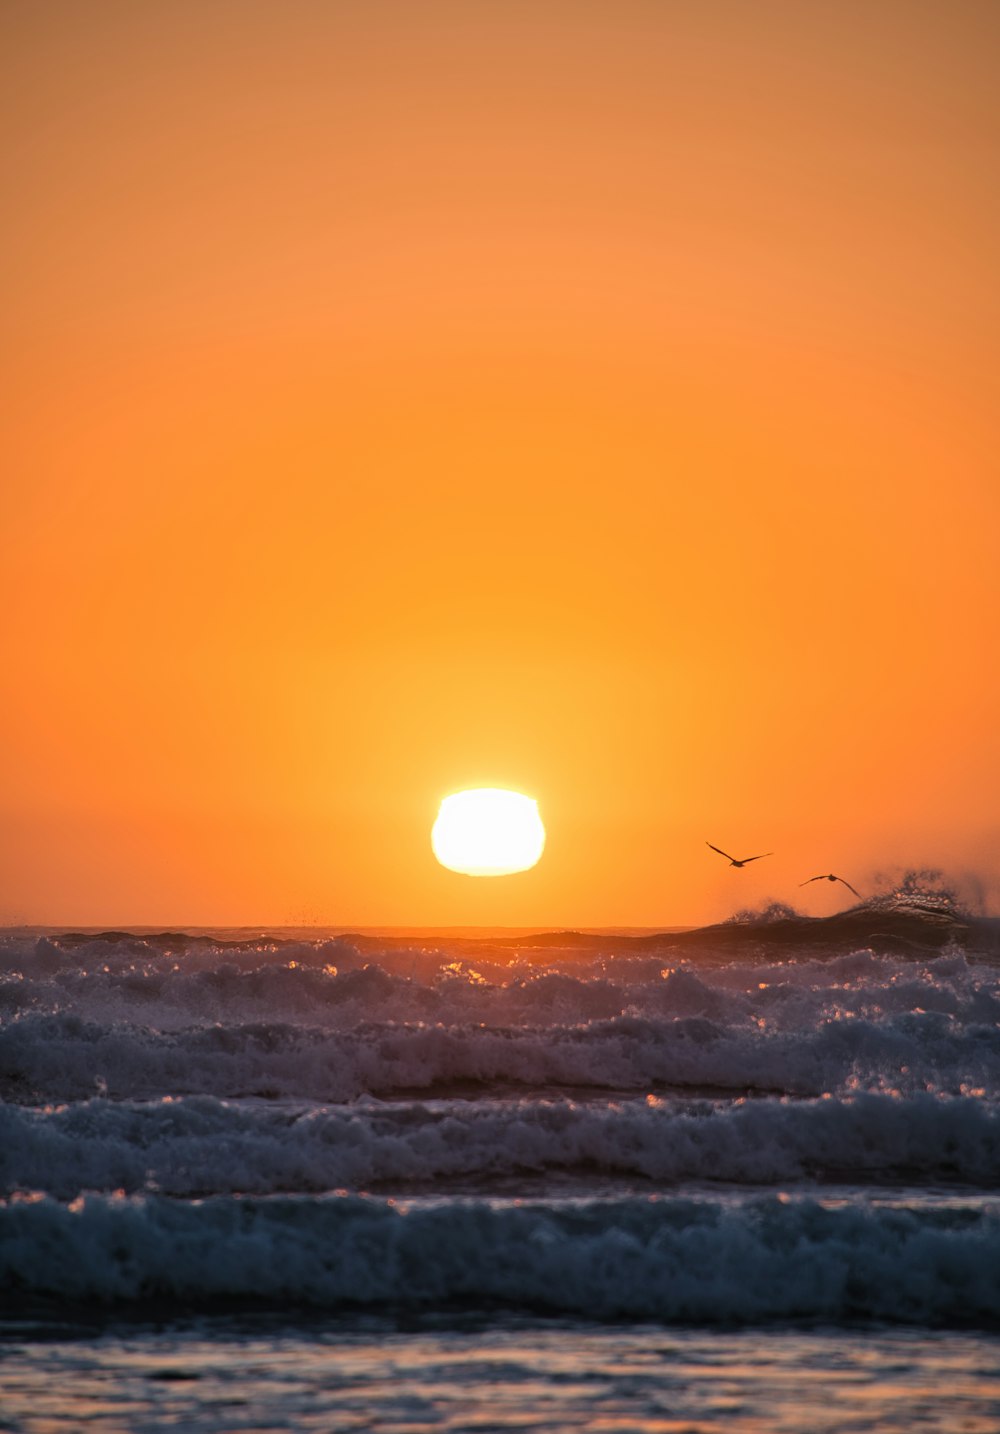 sea waves crashing on shore during sunset photo – Free Backgrounds Image on  Unsplash